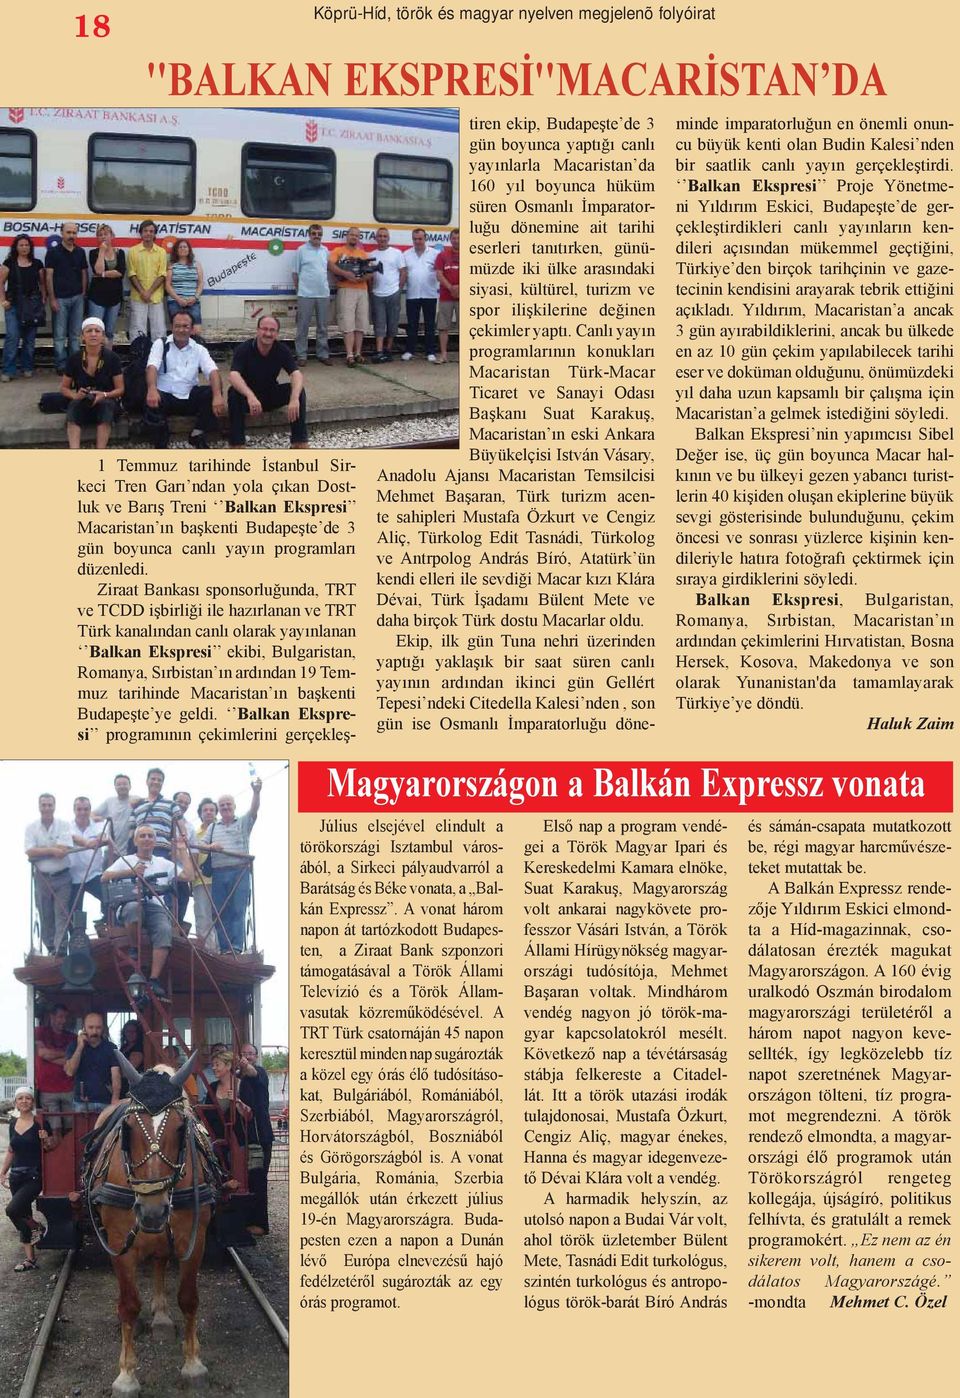 Ziraat Bankası sponsorluğunda, TRT ve TCDD işbirliği ile hazırlanan ve TRT Türk kanalından canlı olarak yayınlanan Balkan Ekspresi ekibi, Bulgaristan, Romanya, Sırbistan ın ardından 19 Temmuz